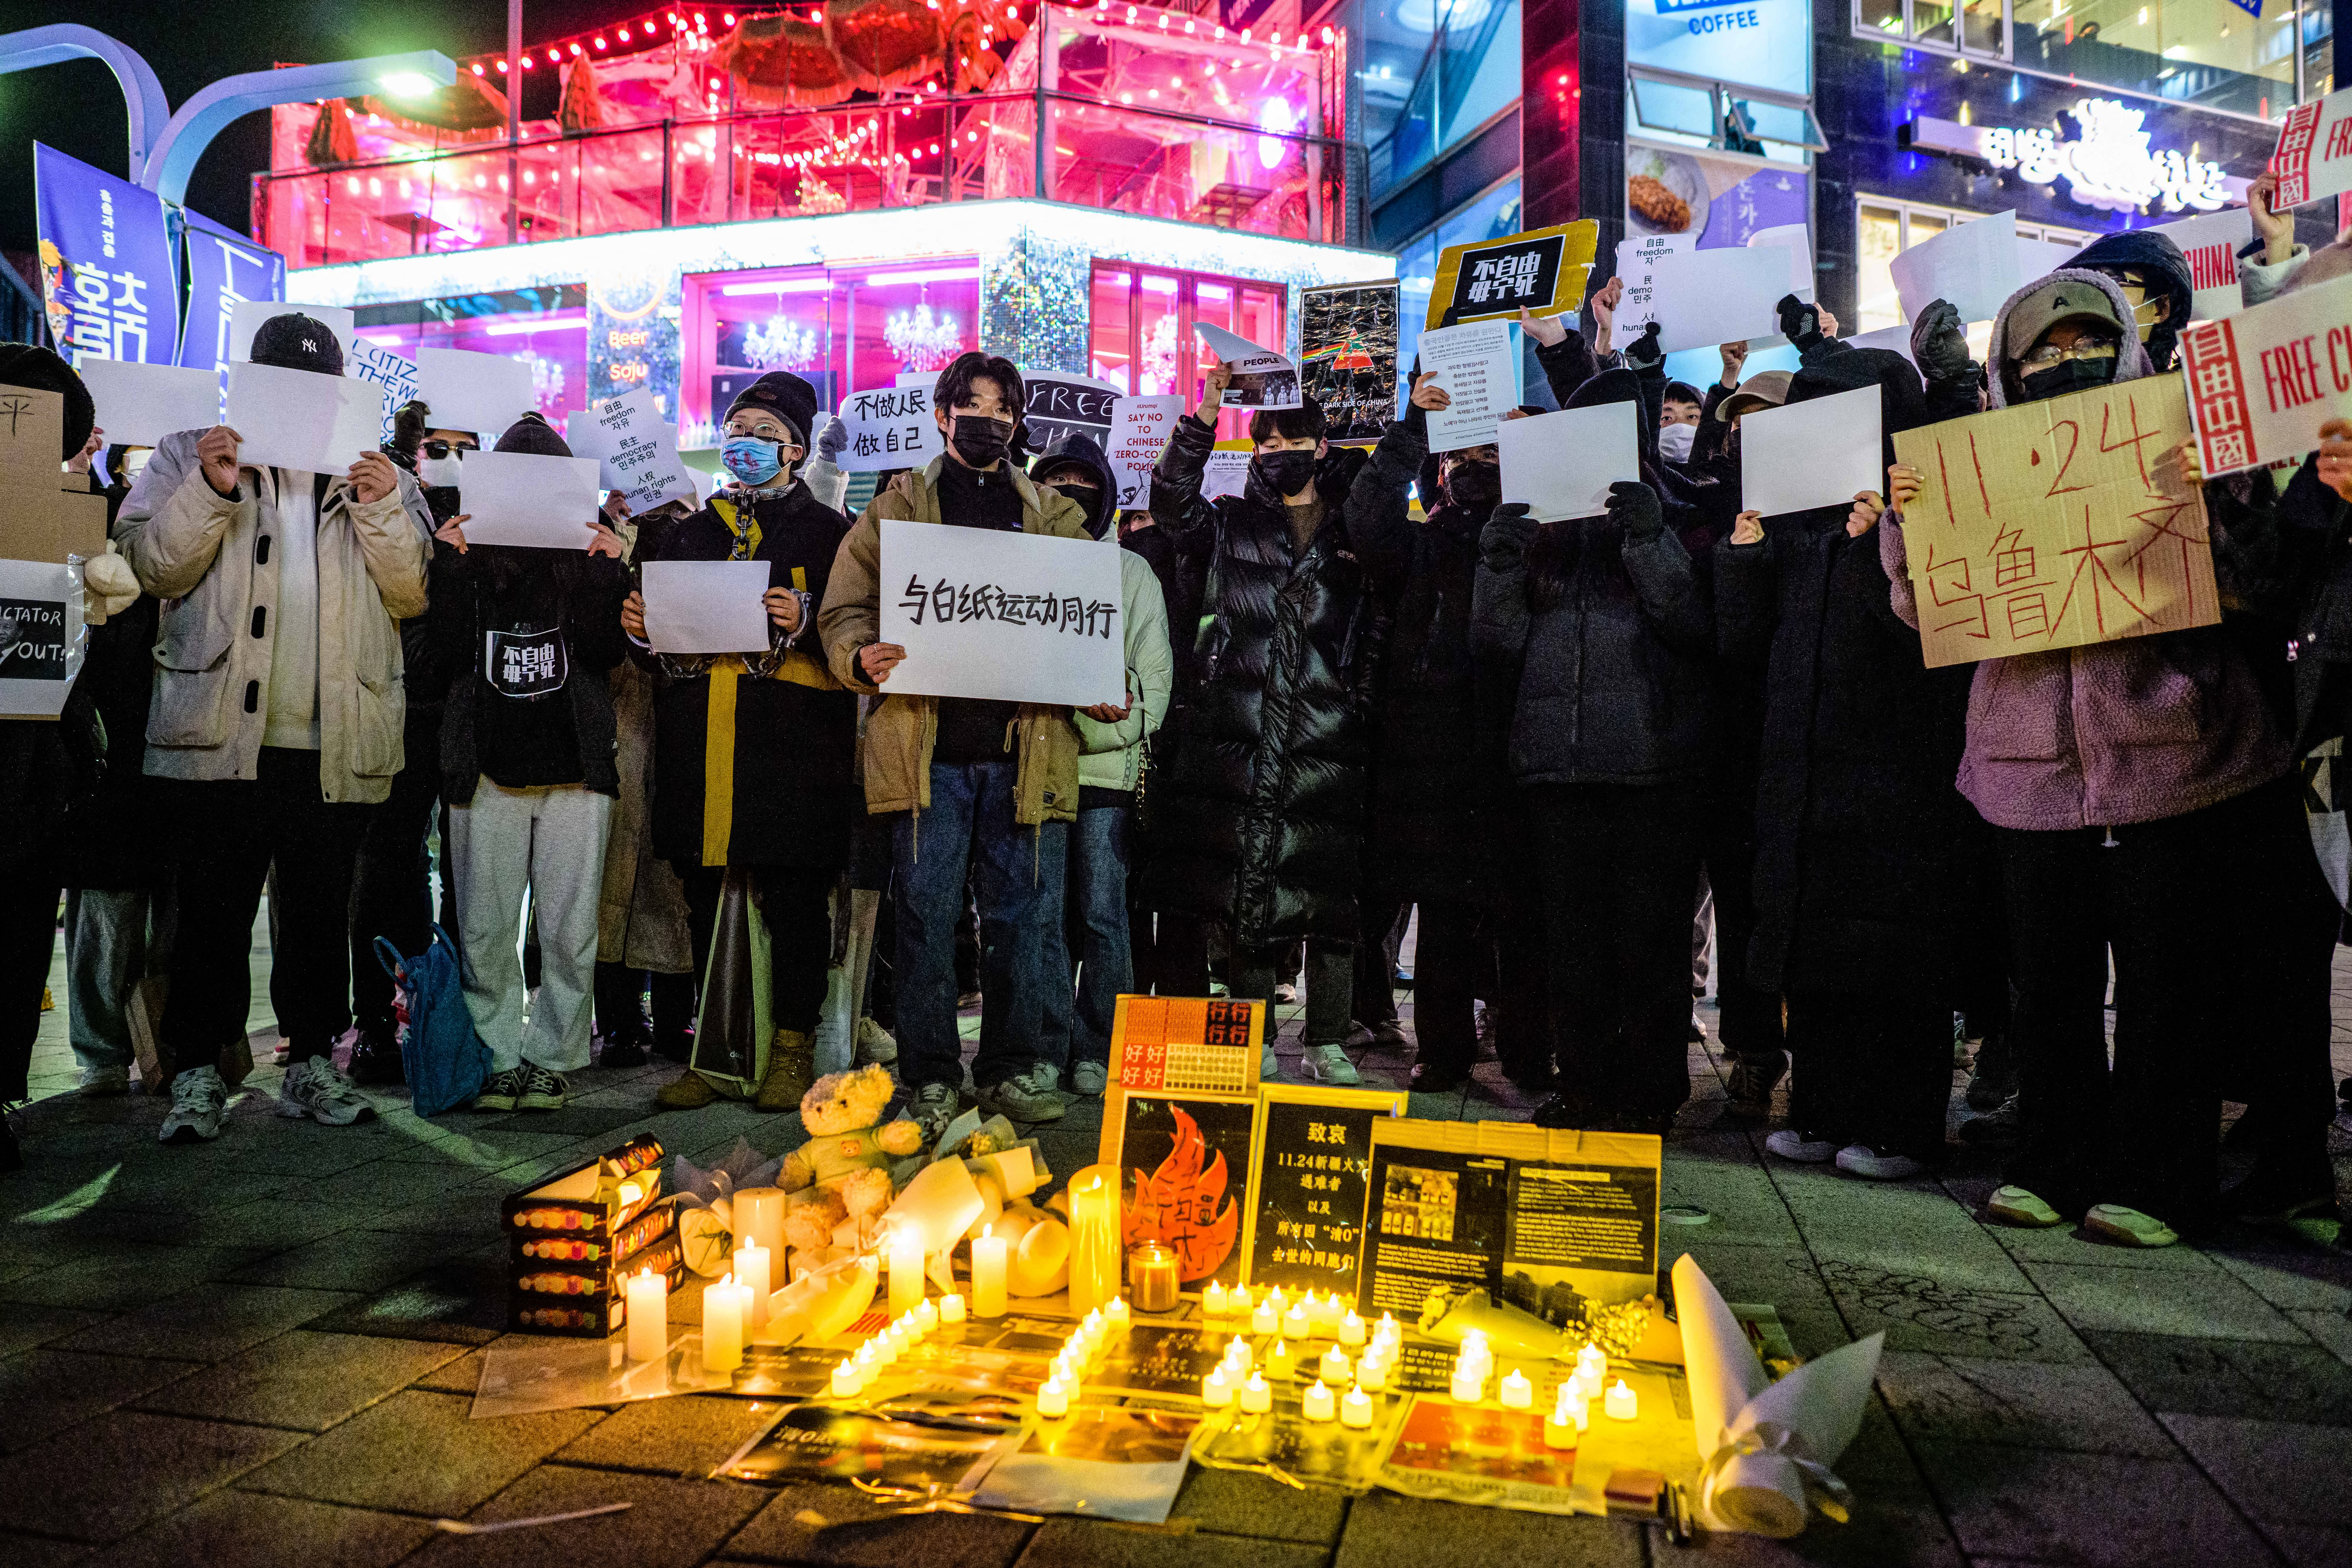 [新聞] 八成韓國人對中共反感 在全球56國中居首